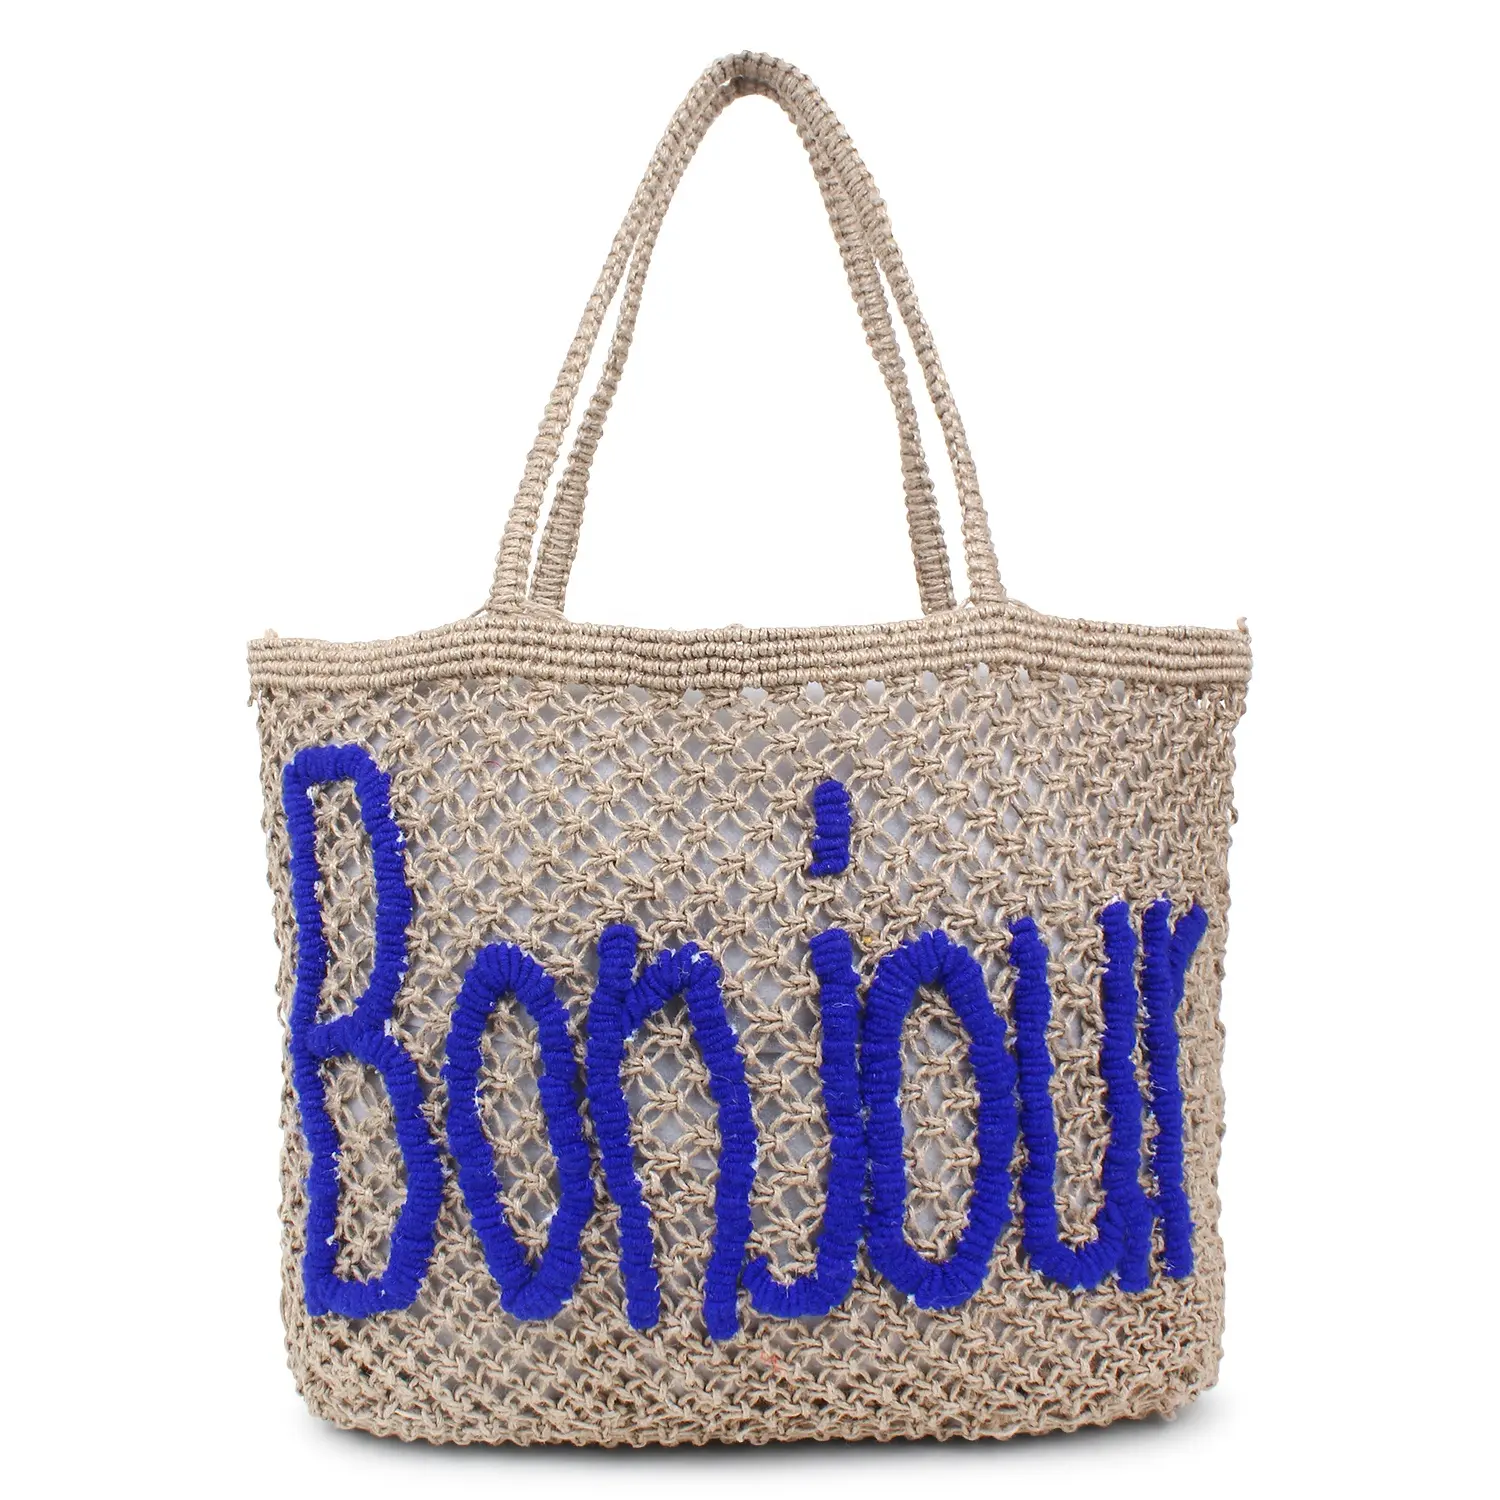 Bolsa de sacola de juta natural, bolsa de sacola de crochê, sacola de praia para compras, feita à mão